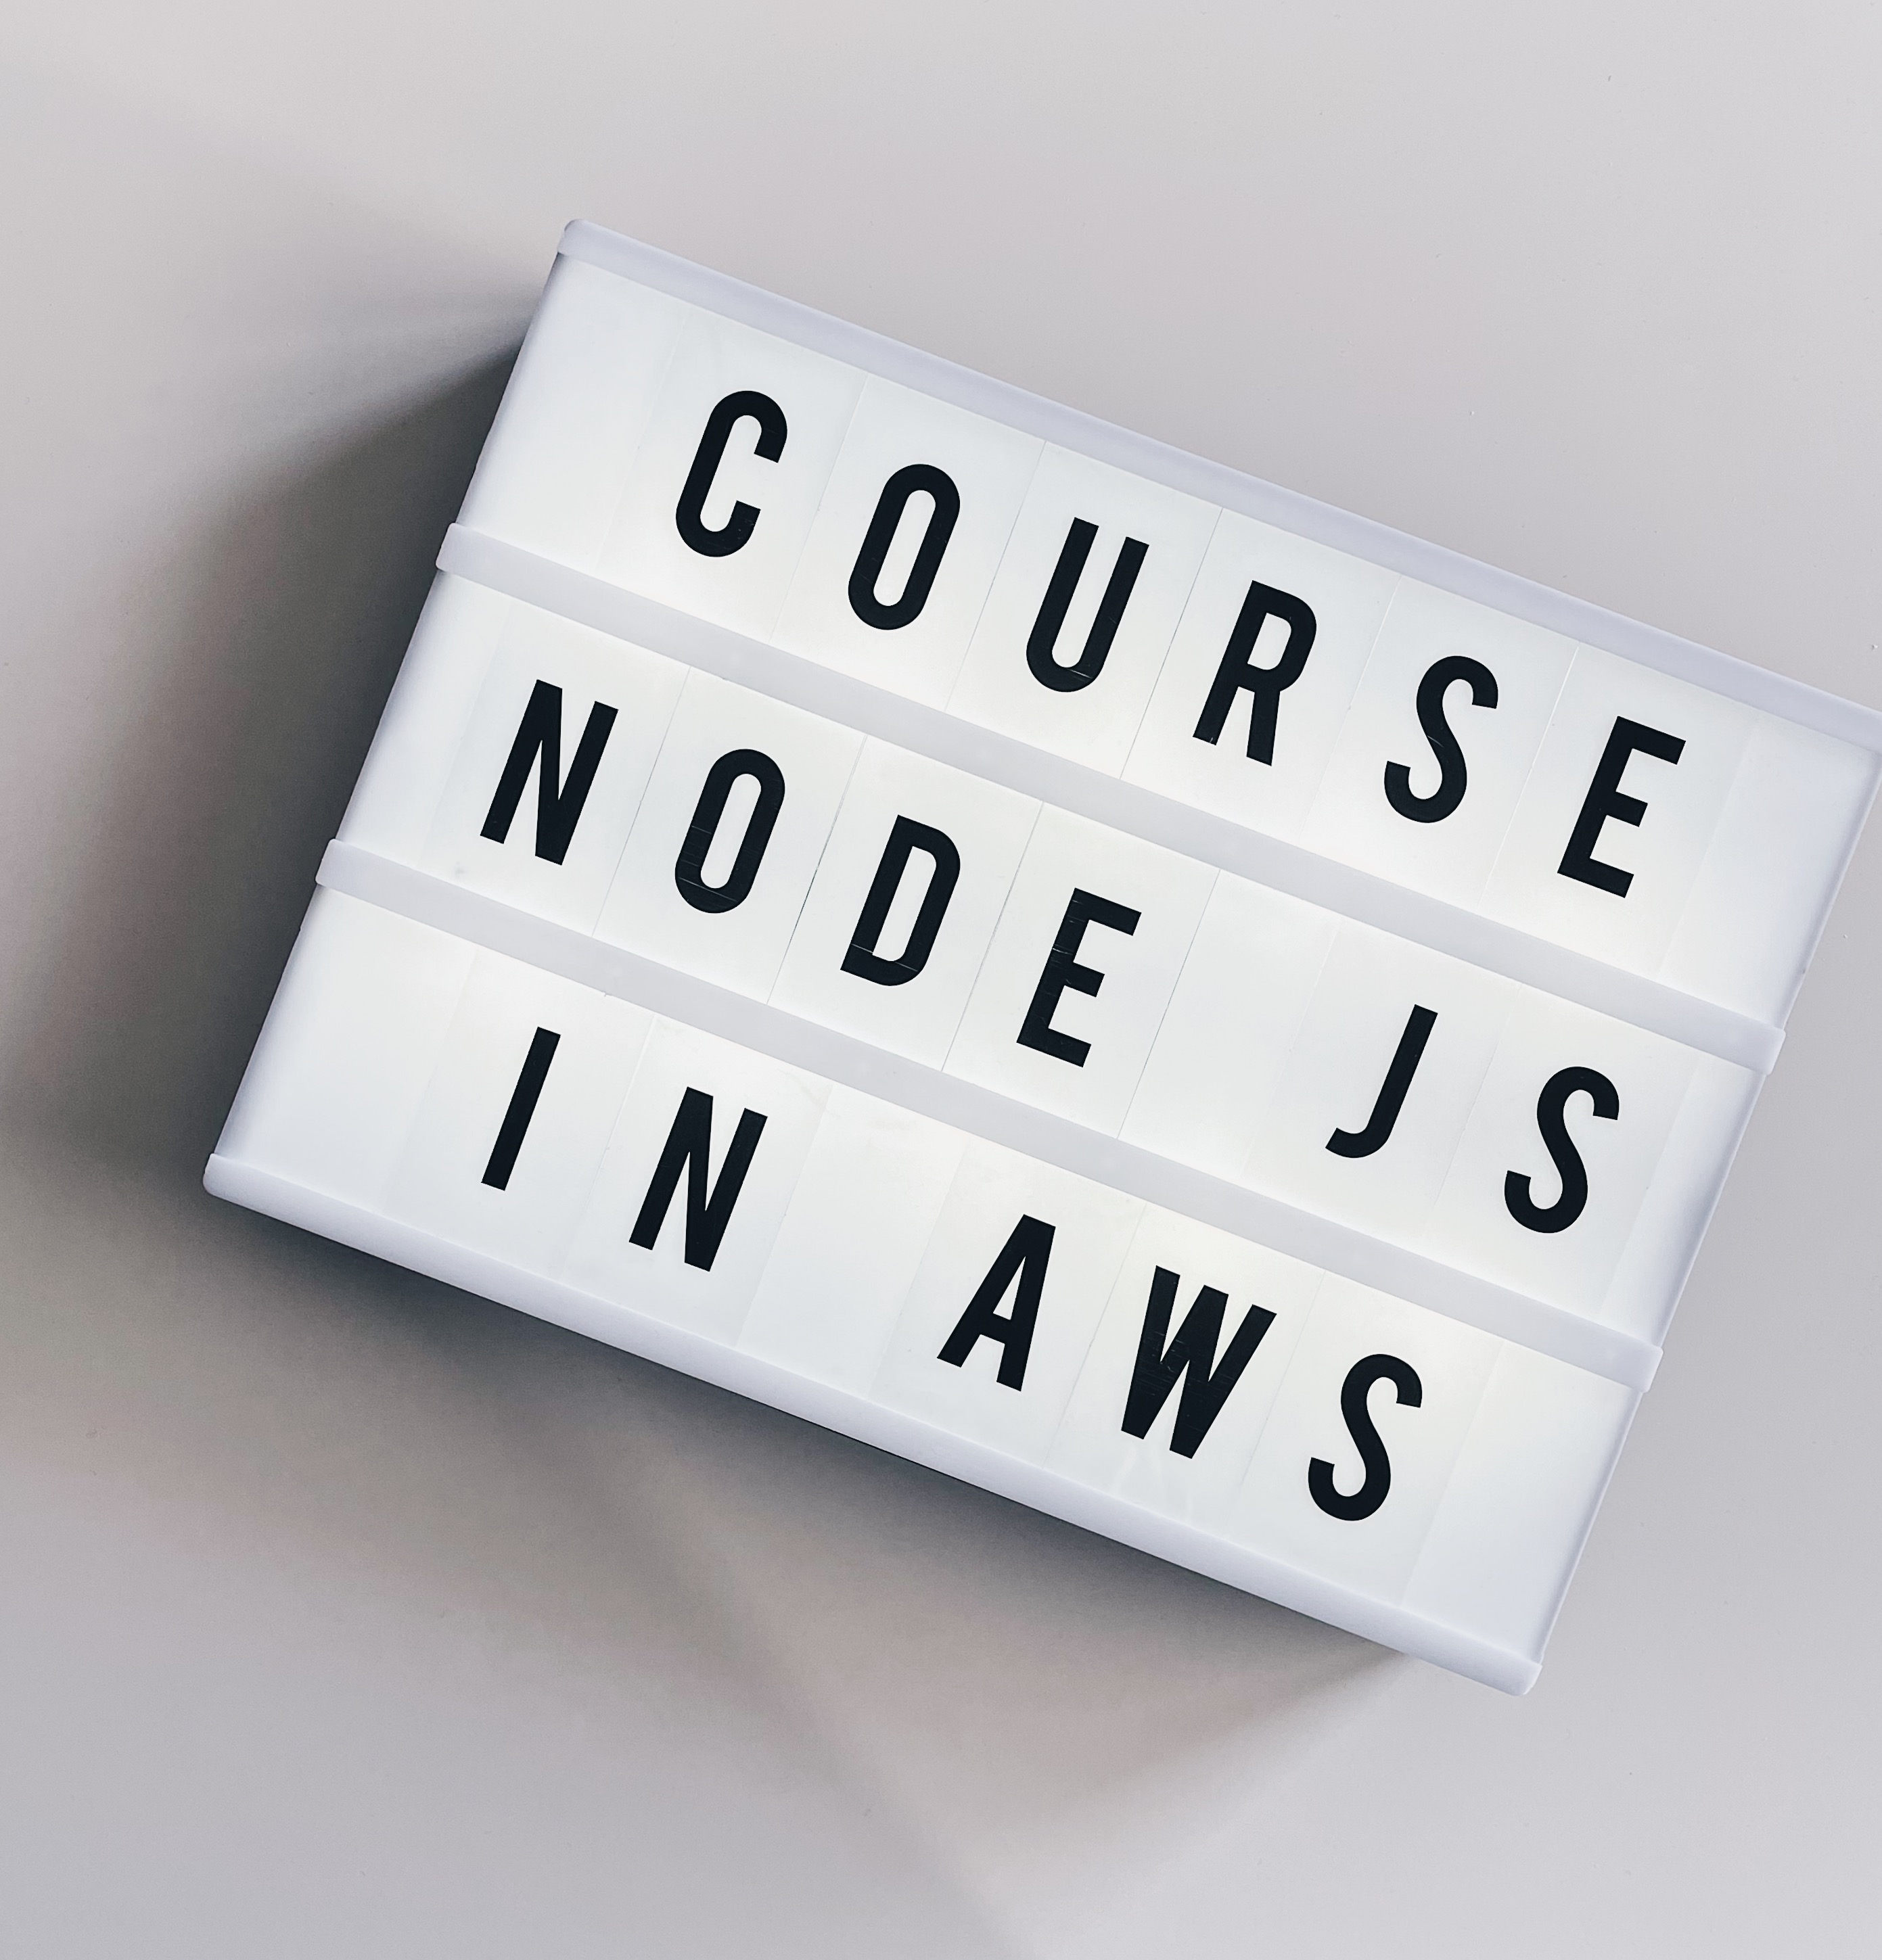 nodejs-in-aws-course2